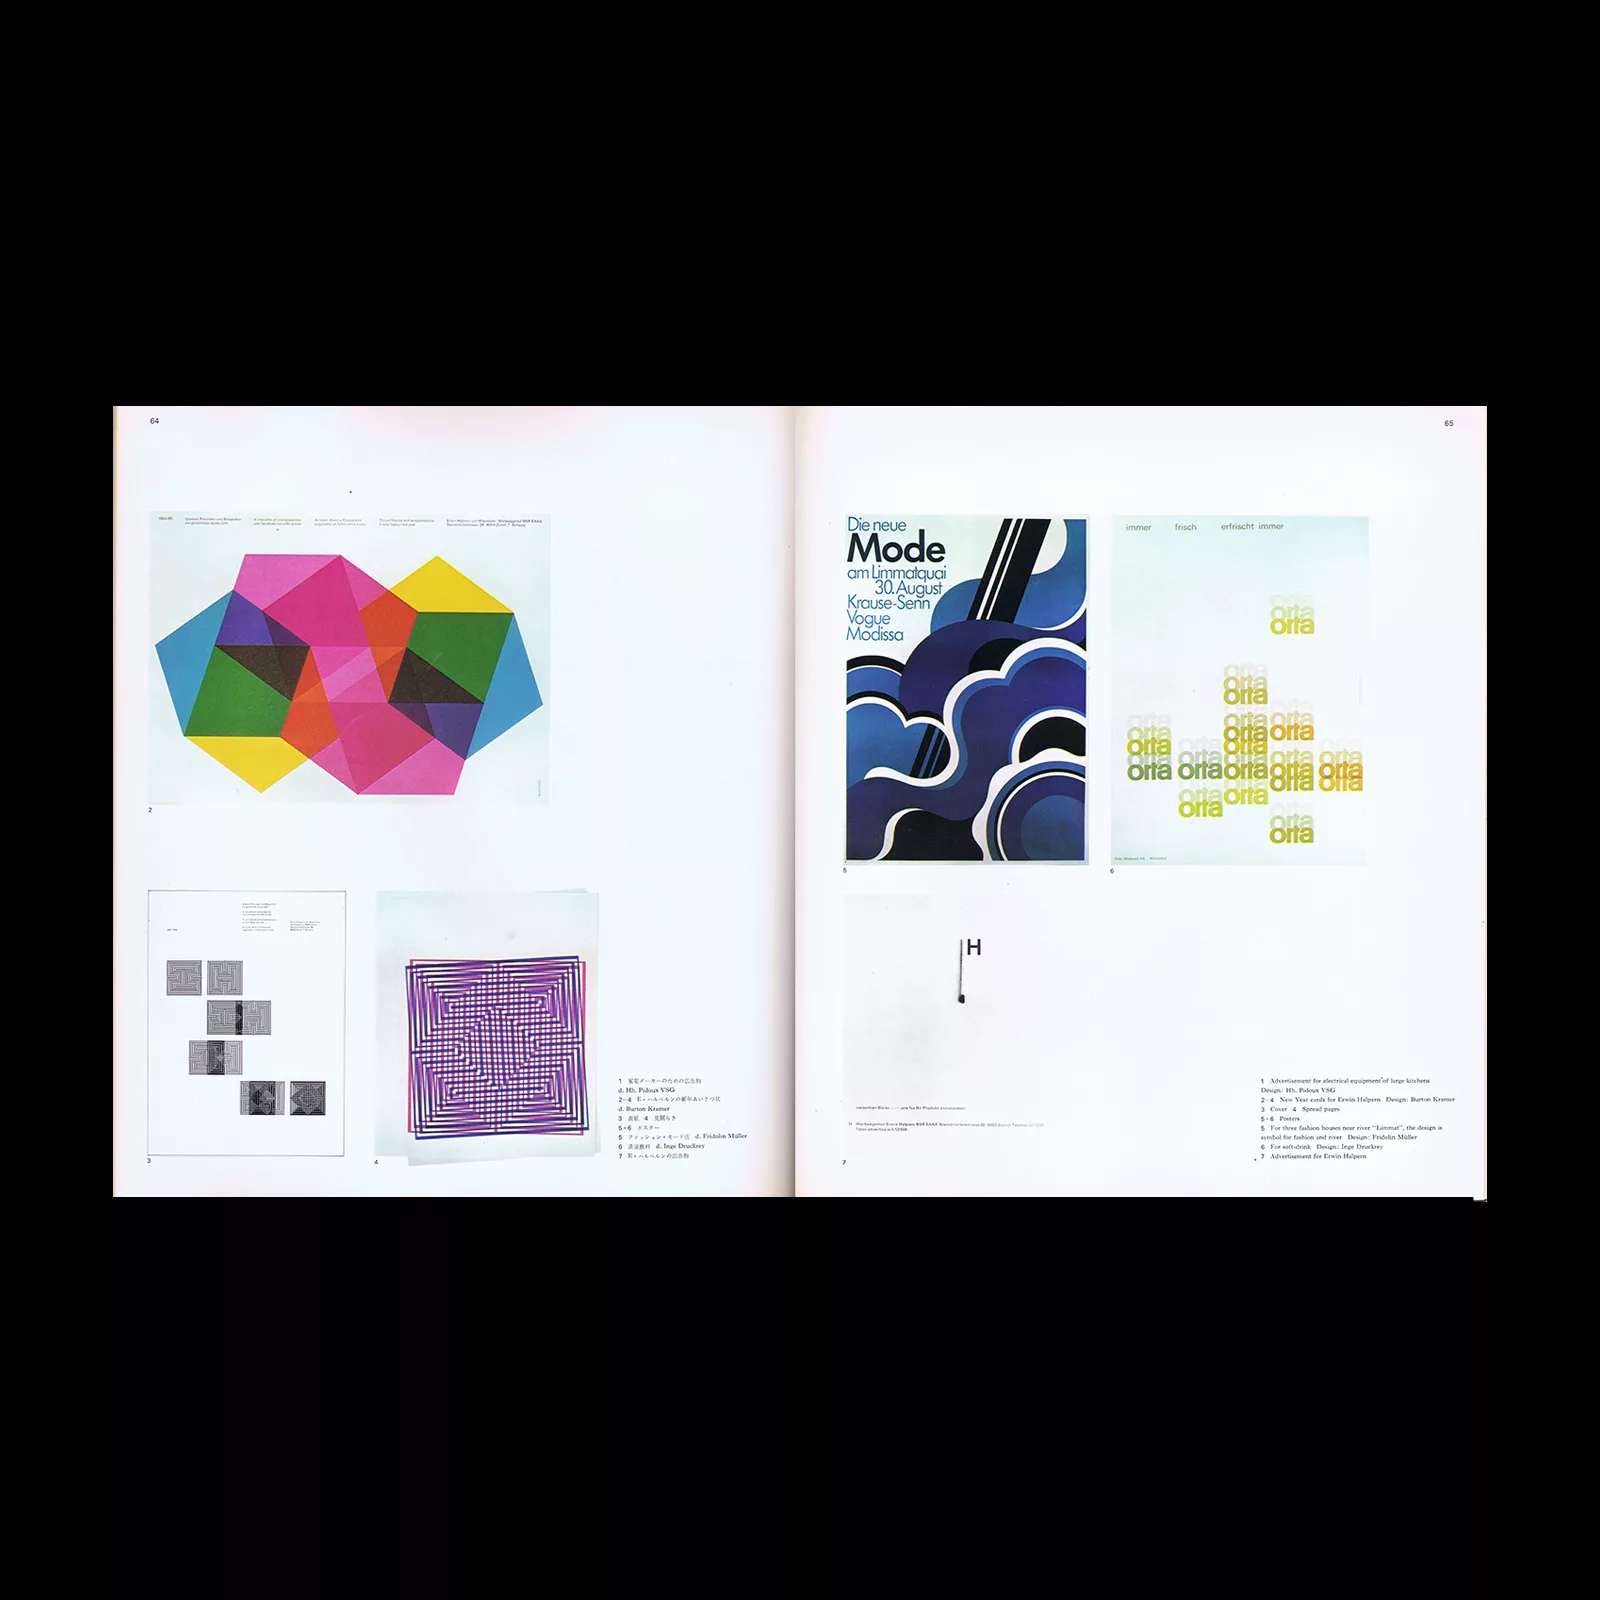 Graphic Design 49, 1973 - Erwin Halpern, Swiss Advertising Agency in Zurich